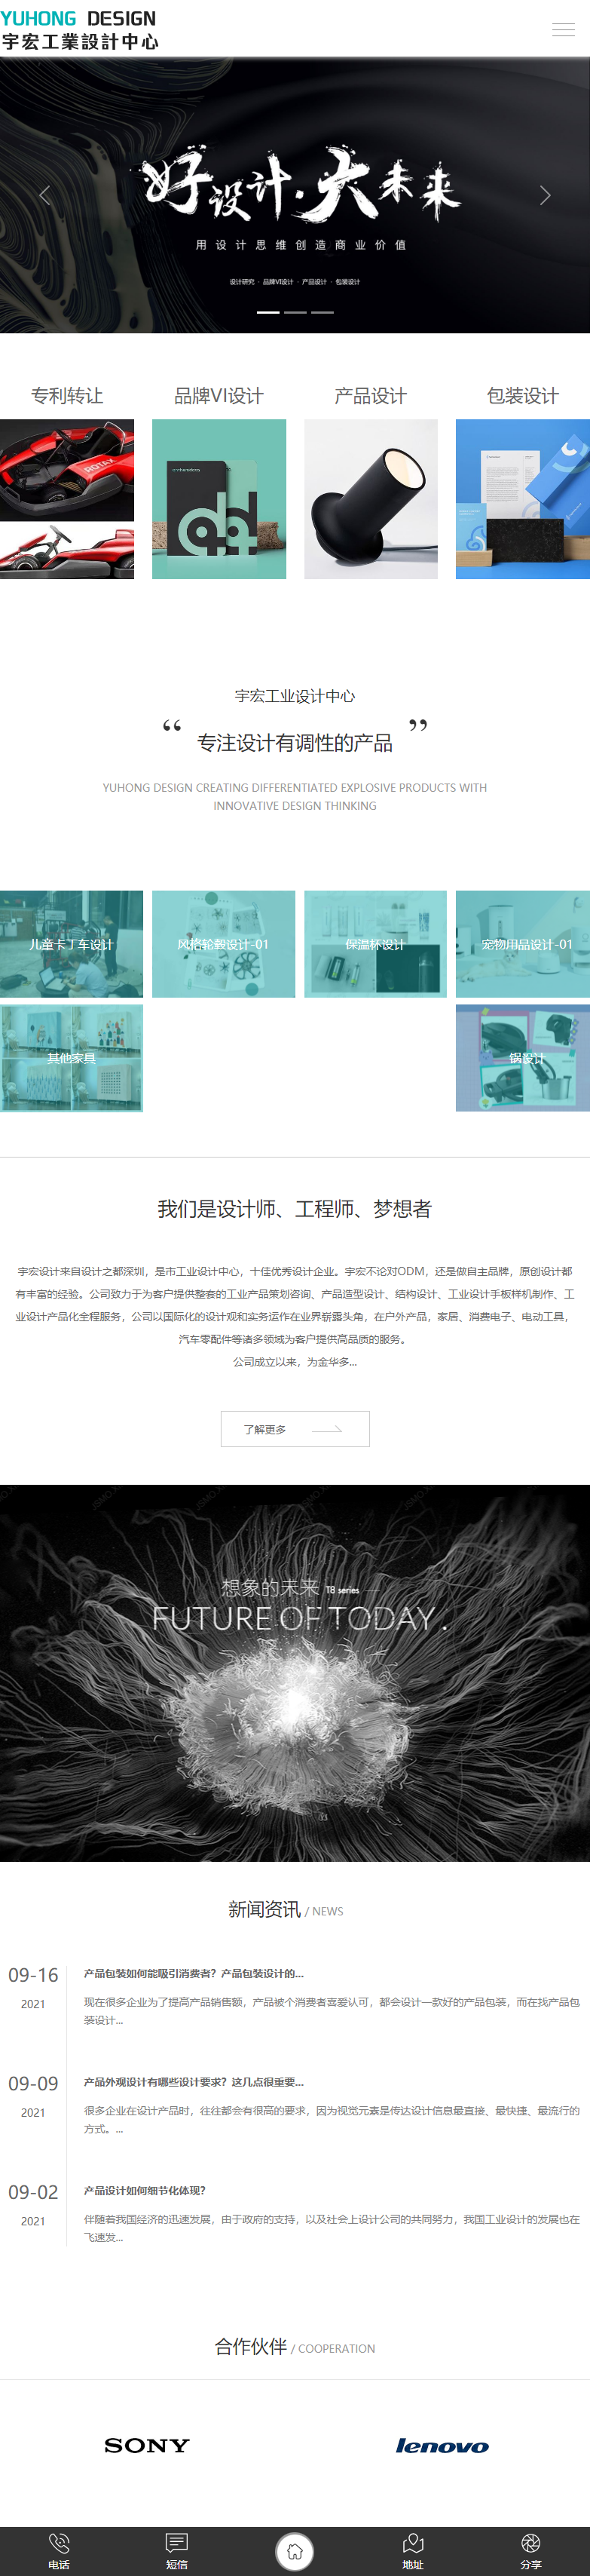 金华宇宏工业设计有限公司网站案例